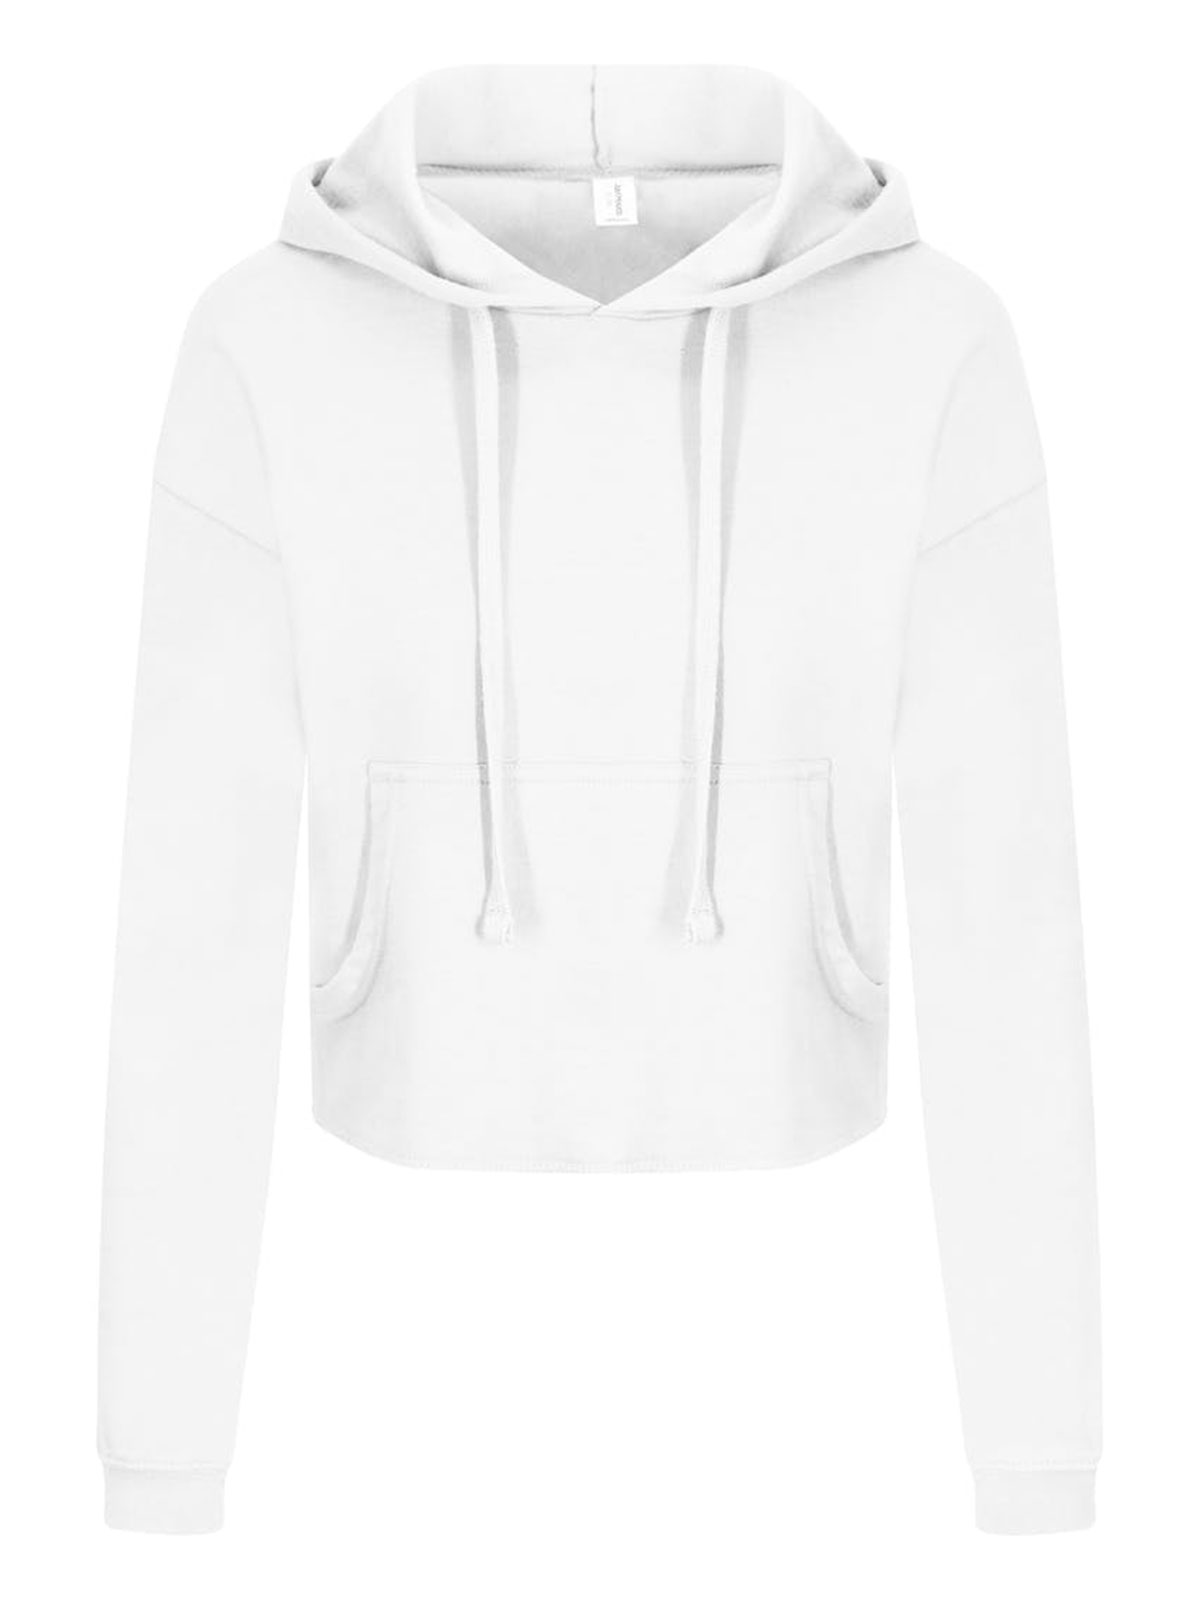 girlie-cropped-hoodie-arctic-white.webp